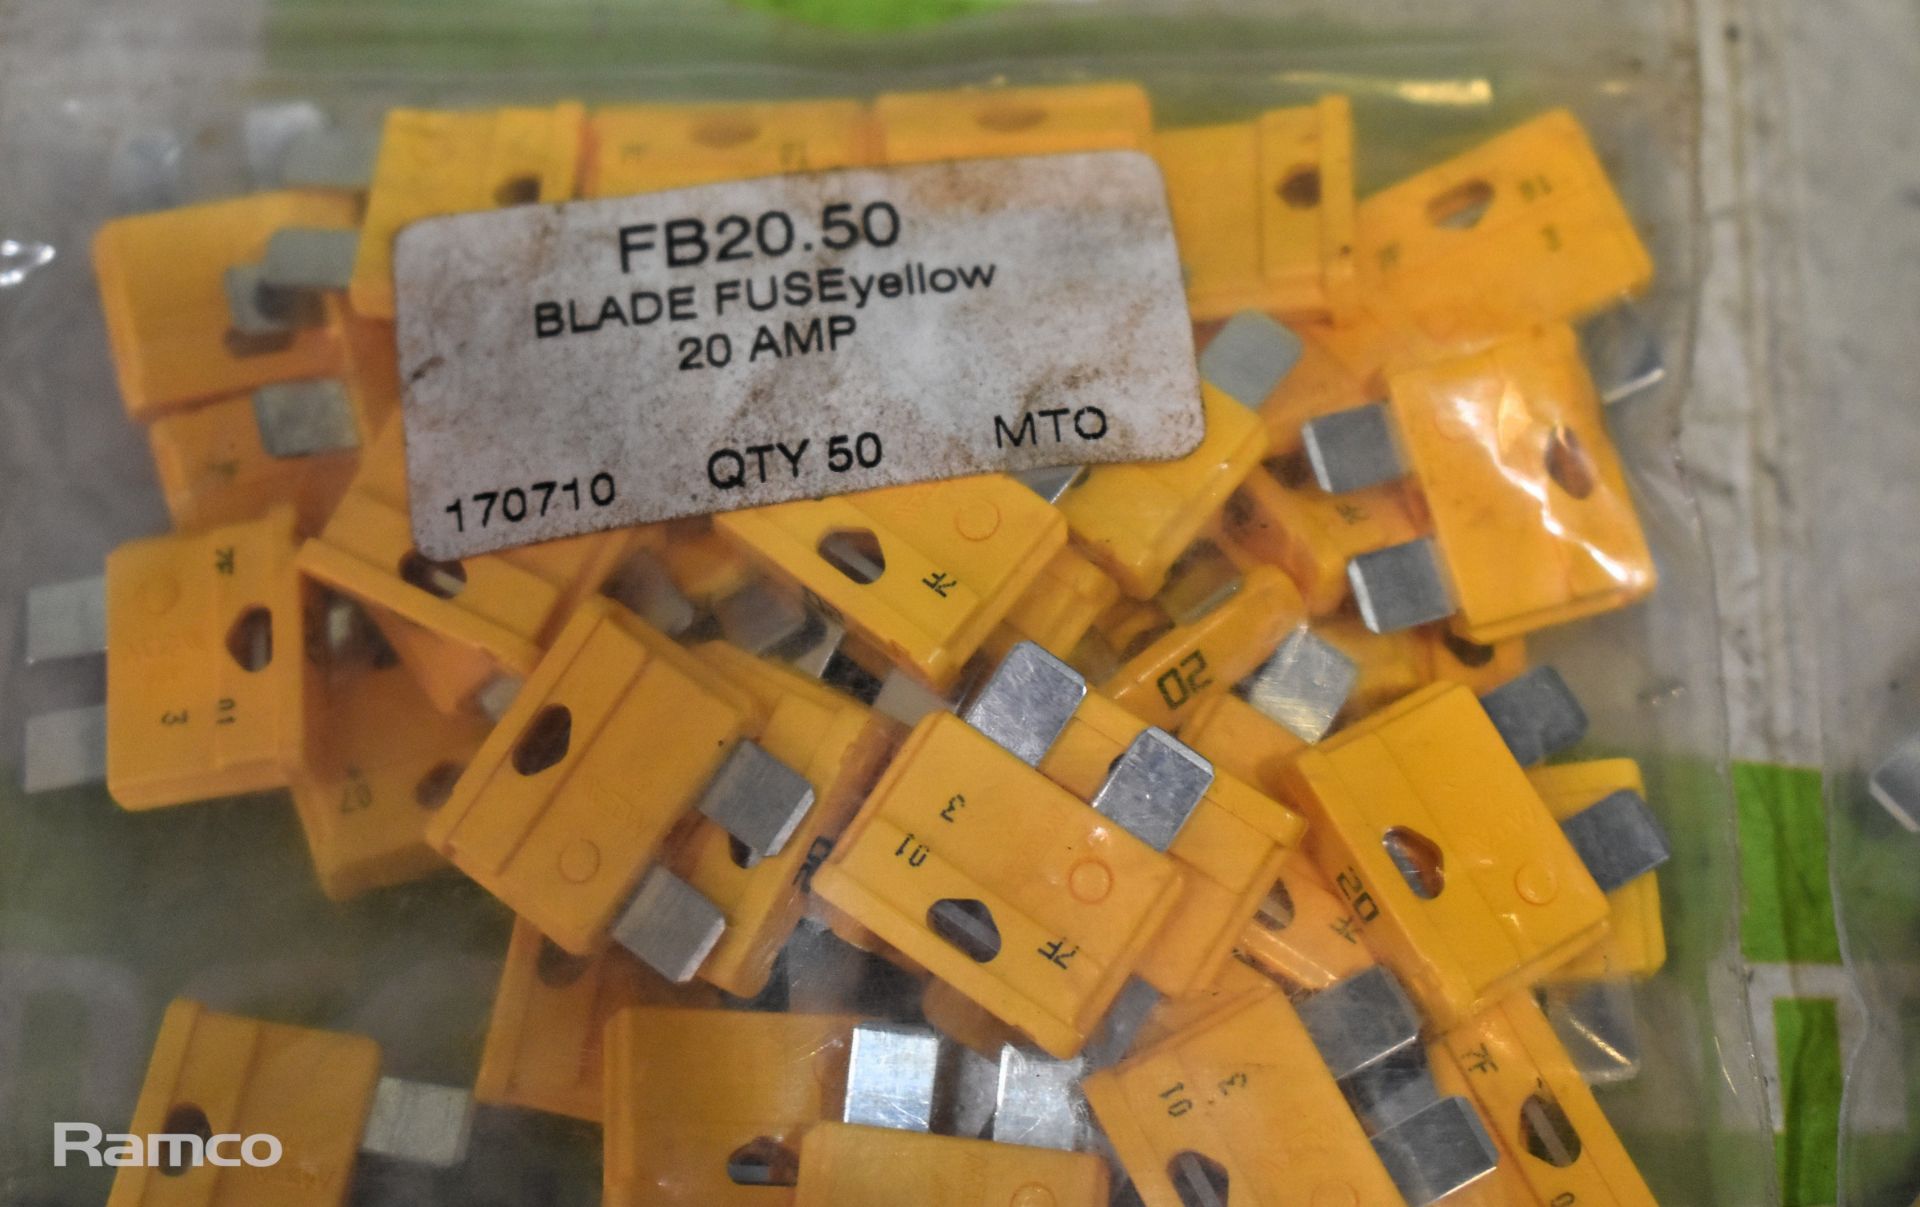 8X FB20.50 yellow 20 amp fuses (50 per pack), 30x Packs of 50 FB05.50 5 AMP blade fuses - Image 4 of 5